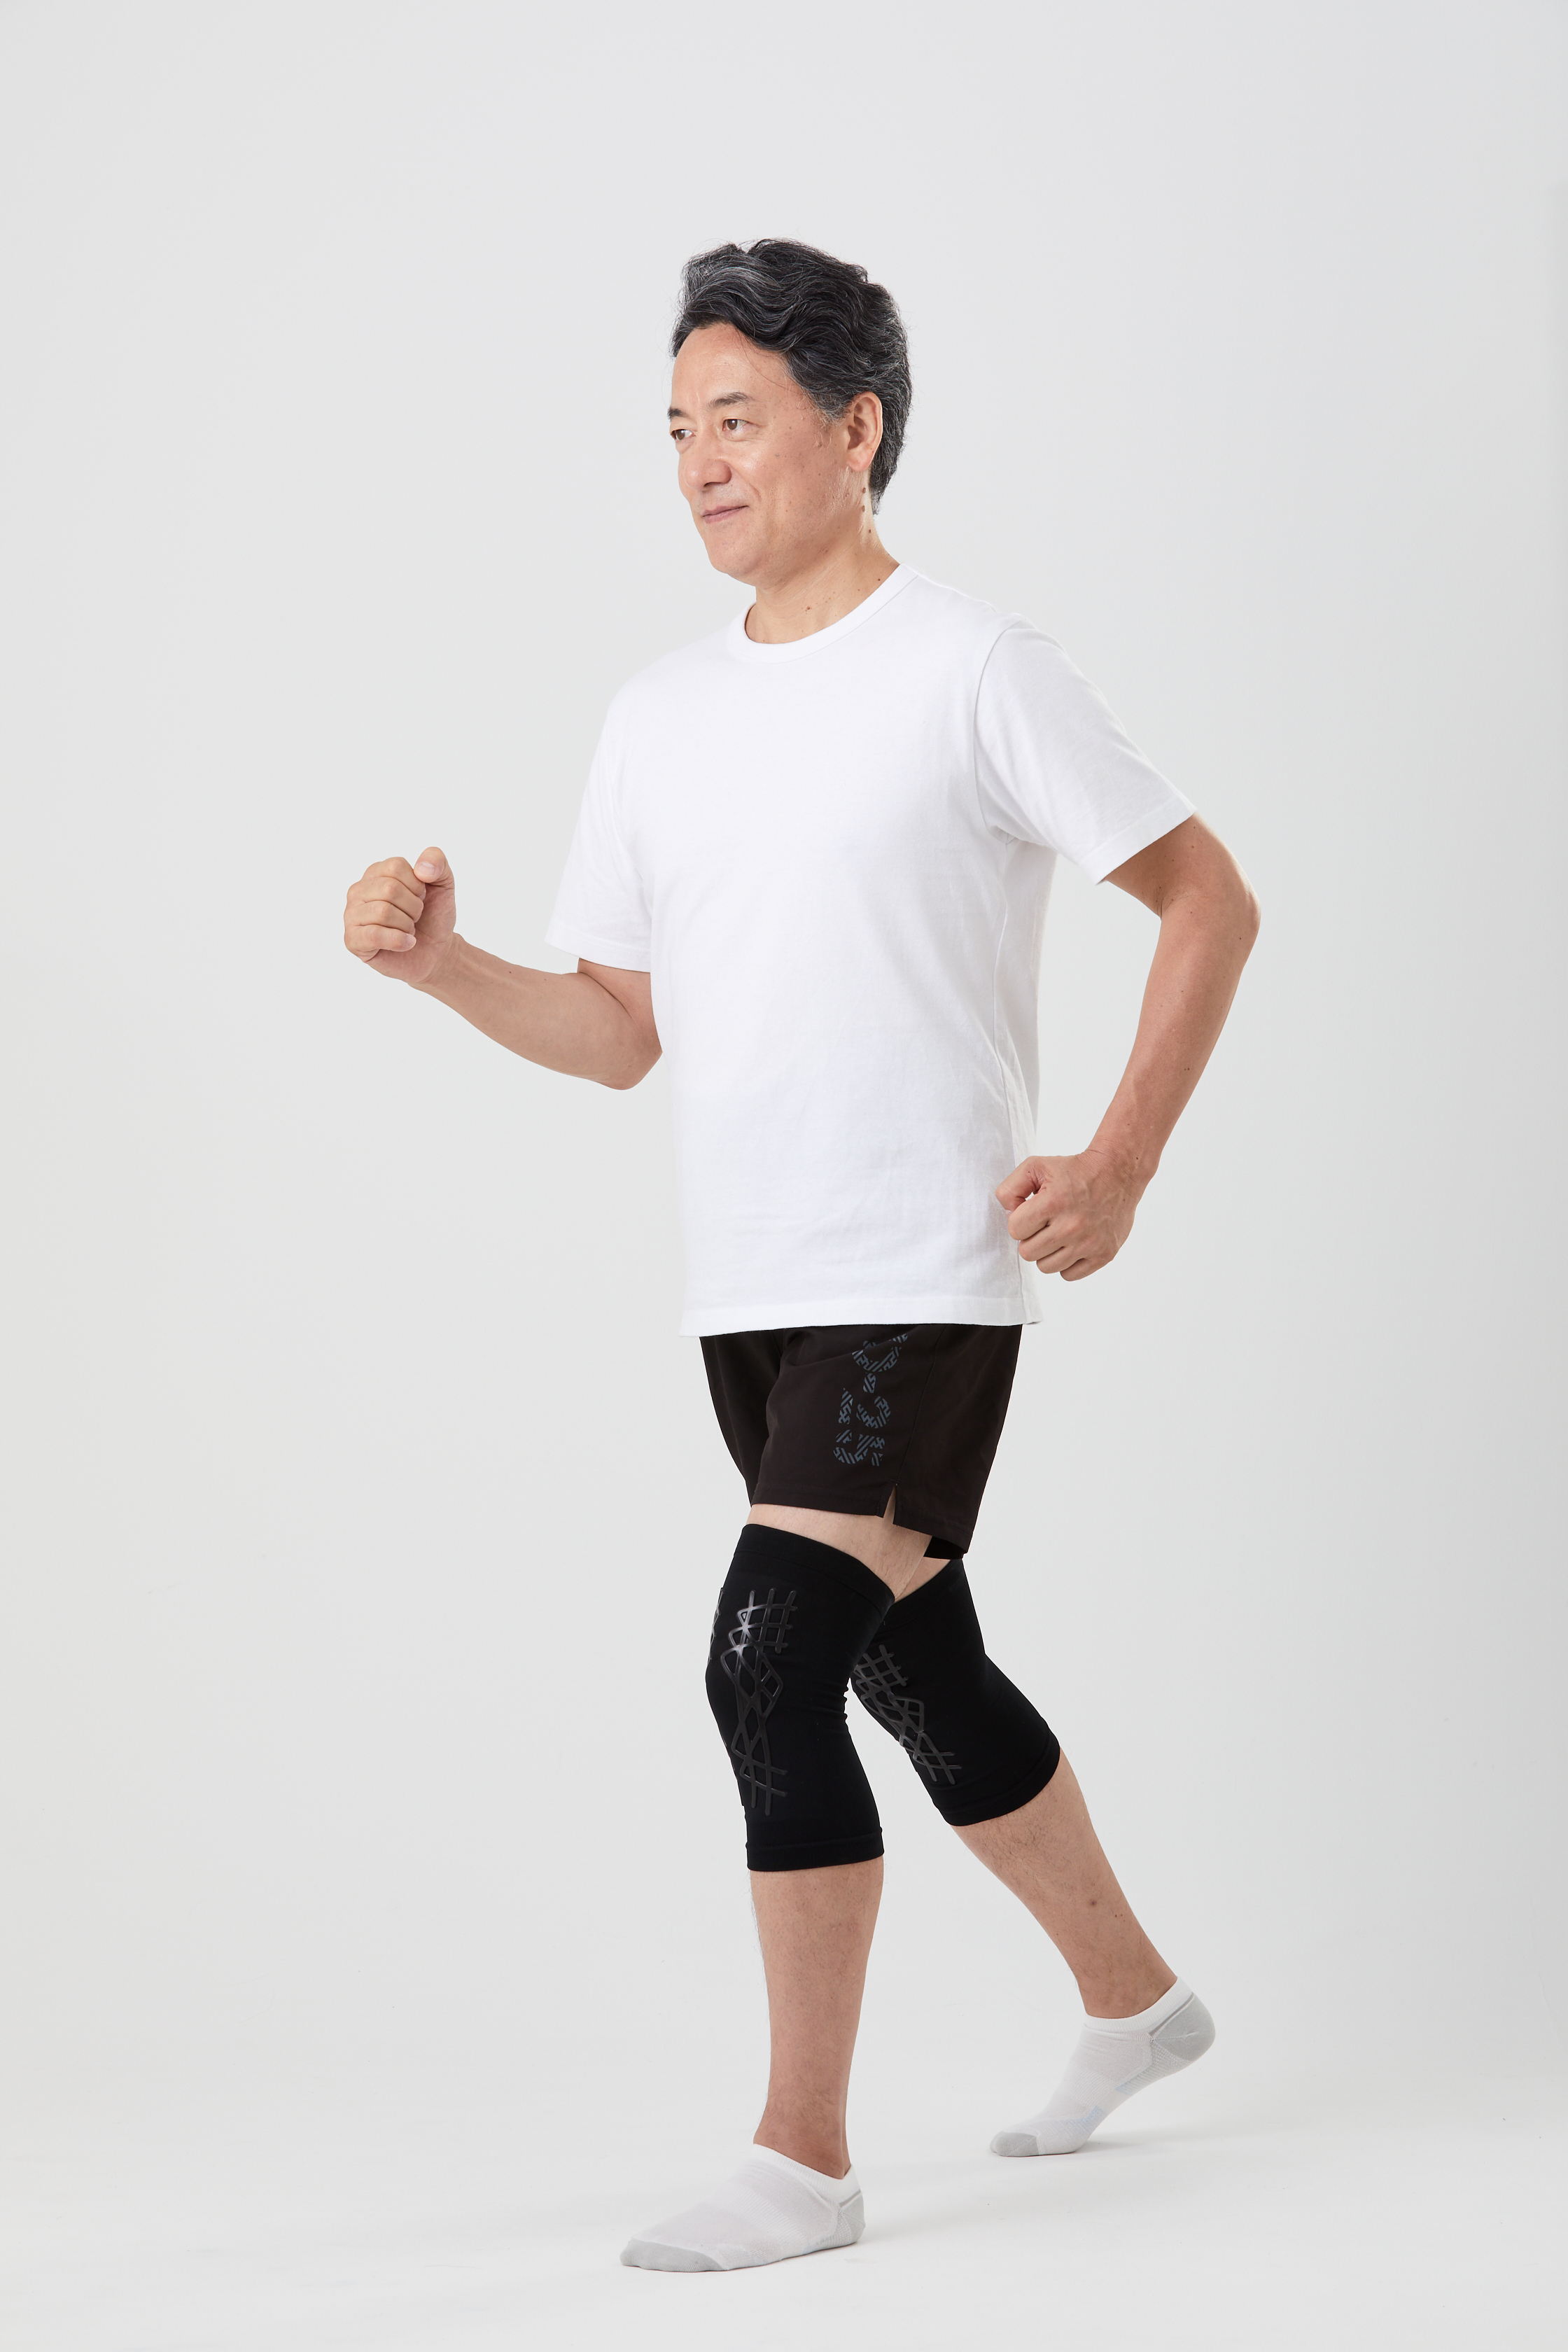 人工筋肉サポーター 膝パワーウォーク | 【レミントン公式通販サイト